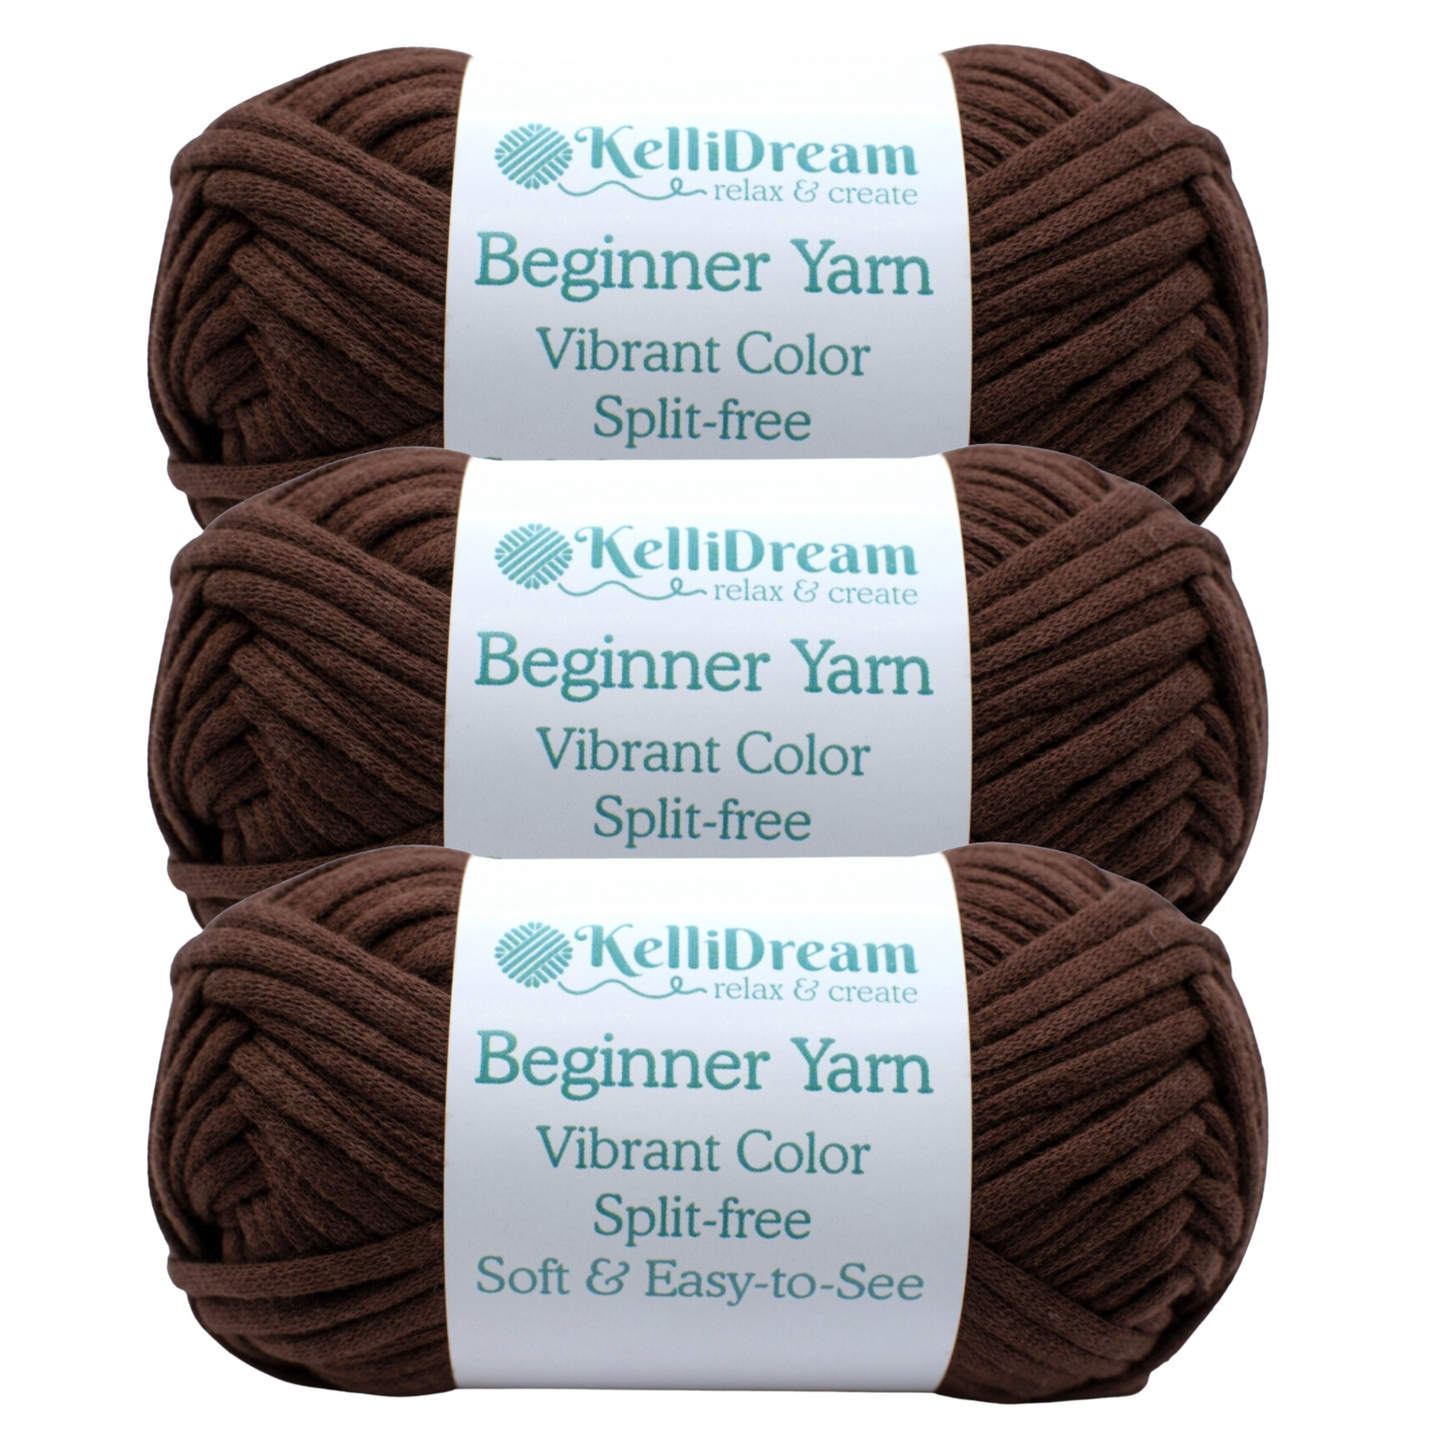 KelliDream Learn to Crochet for Beginners Kit